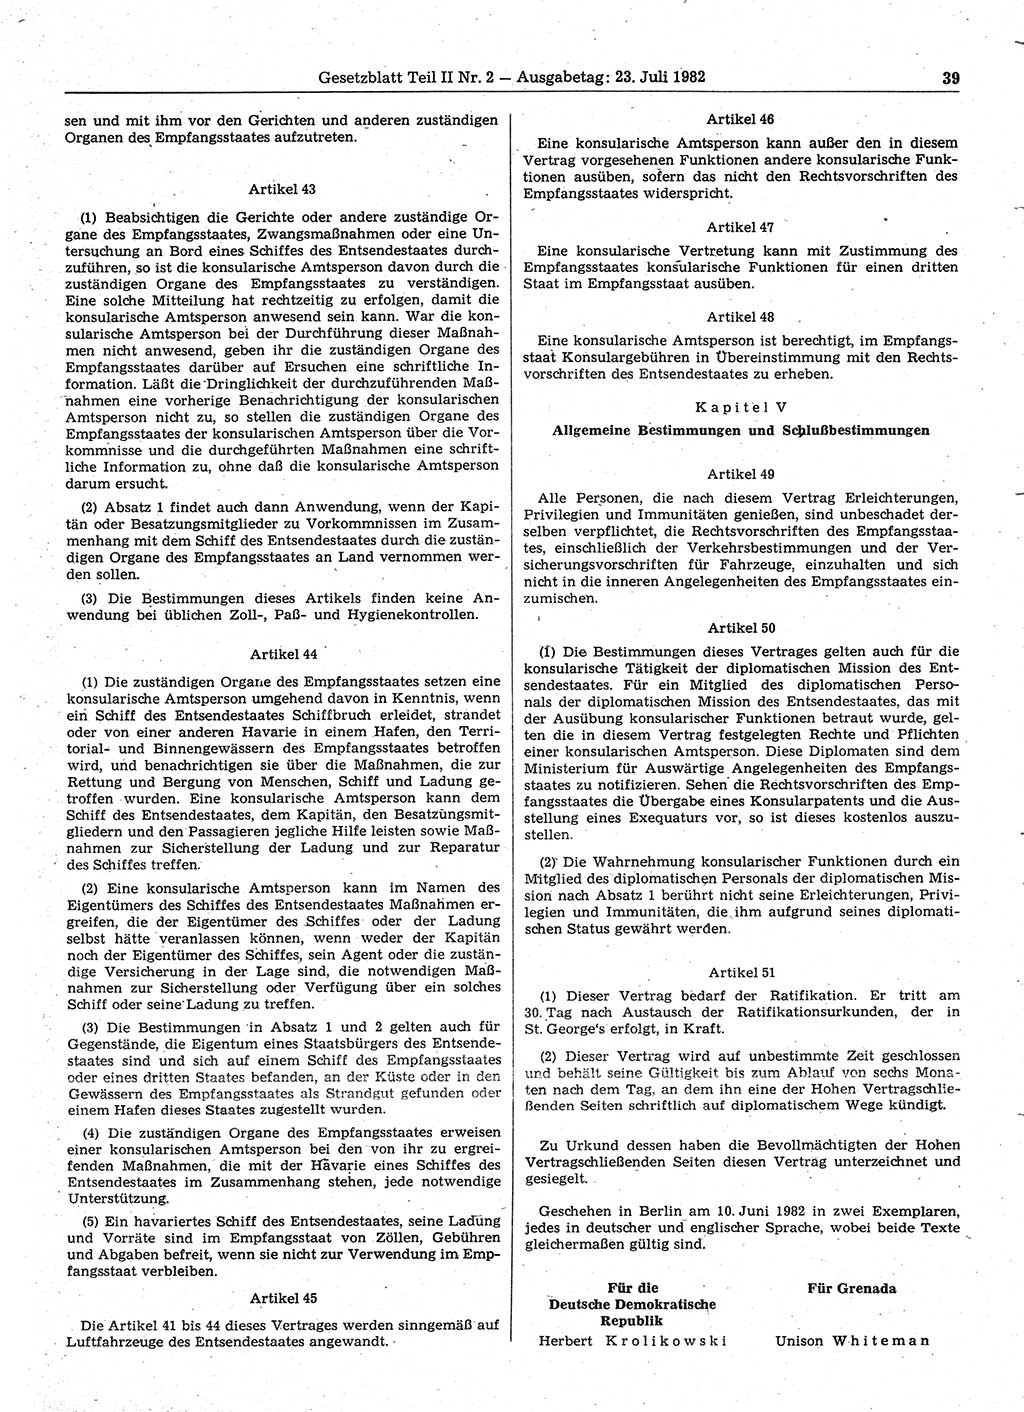 Gesetzblatt (GBl.) der Deutschen Demokratischen Republik (DDR) Teil ⅠⅠ 1982, Seite 39 (GBl. DDR ⅠⅠ 1982, S. 39)